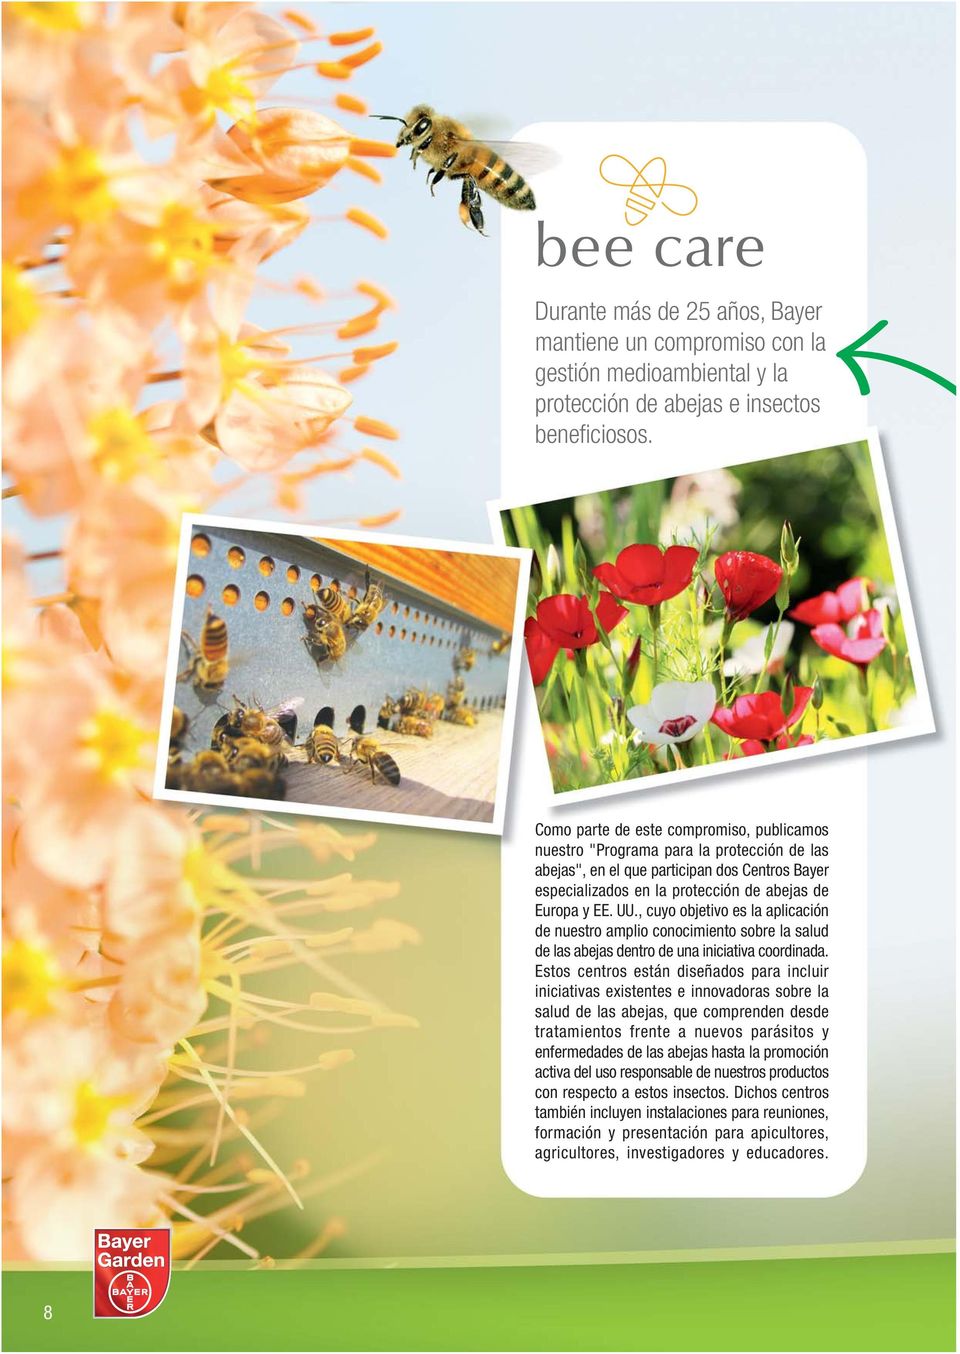 , cuyo objetivo es la aplicación de nuestro amplio conocimiento sobre la salud de las abejas dentro de una iniciativa coordinada.